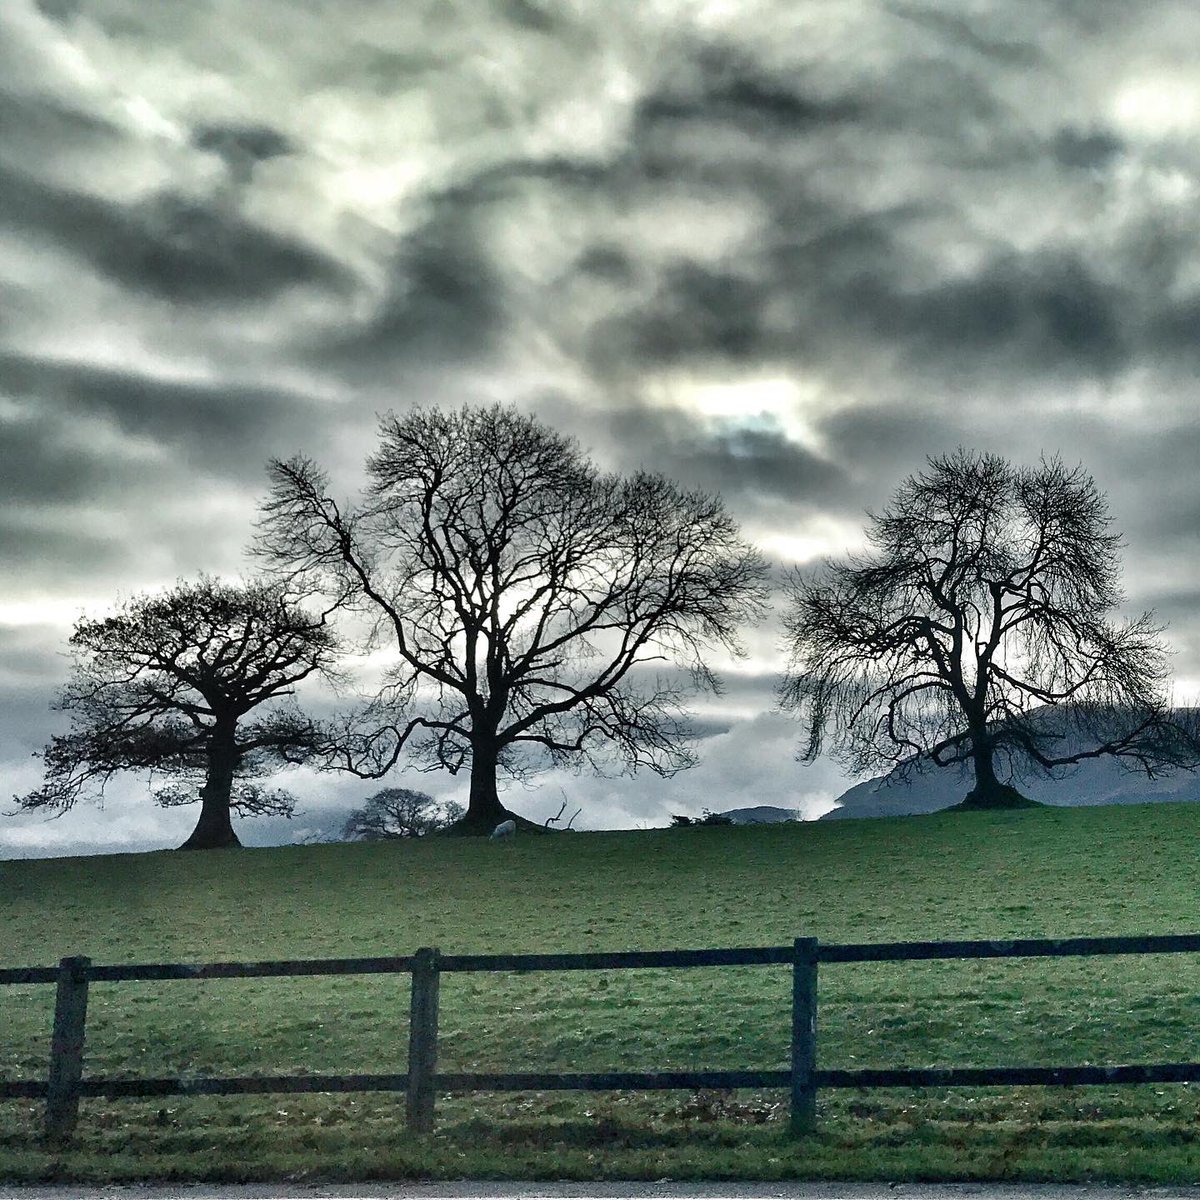 Heading into Killarney. I love these trees

🌳

County Kerry, Ireland 
. #tiitrees #lovekillarney #RingOfKerry #TodayInIreland